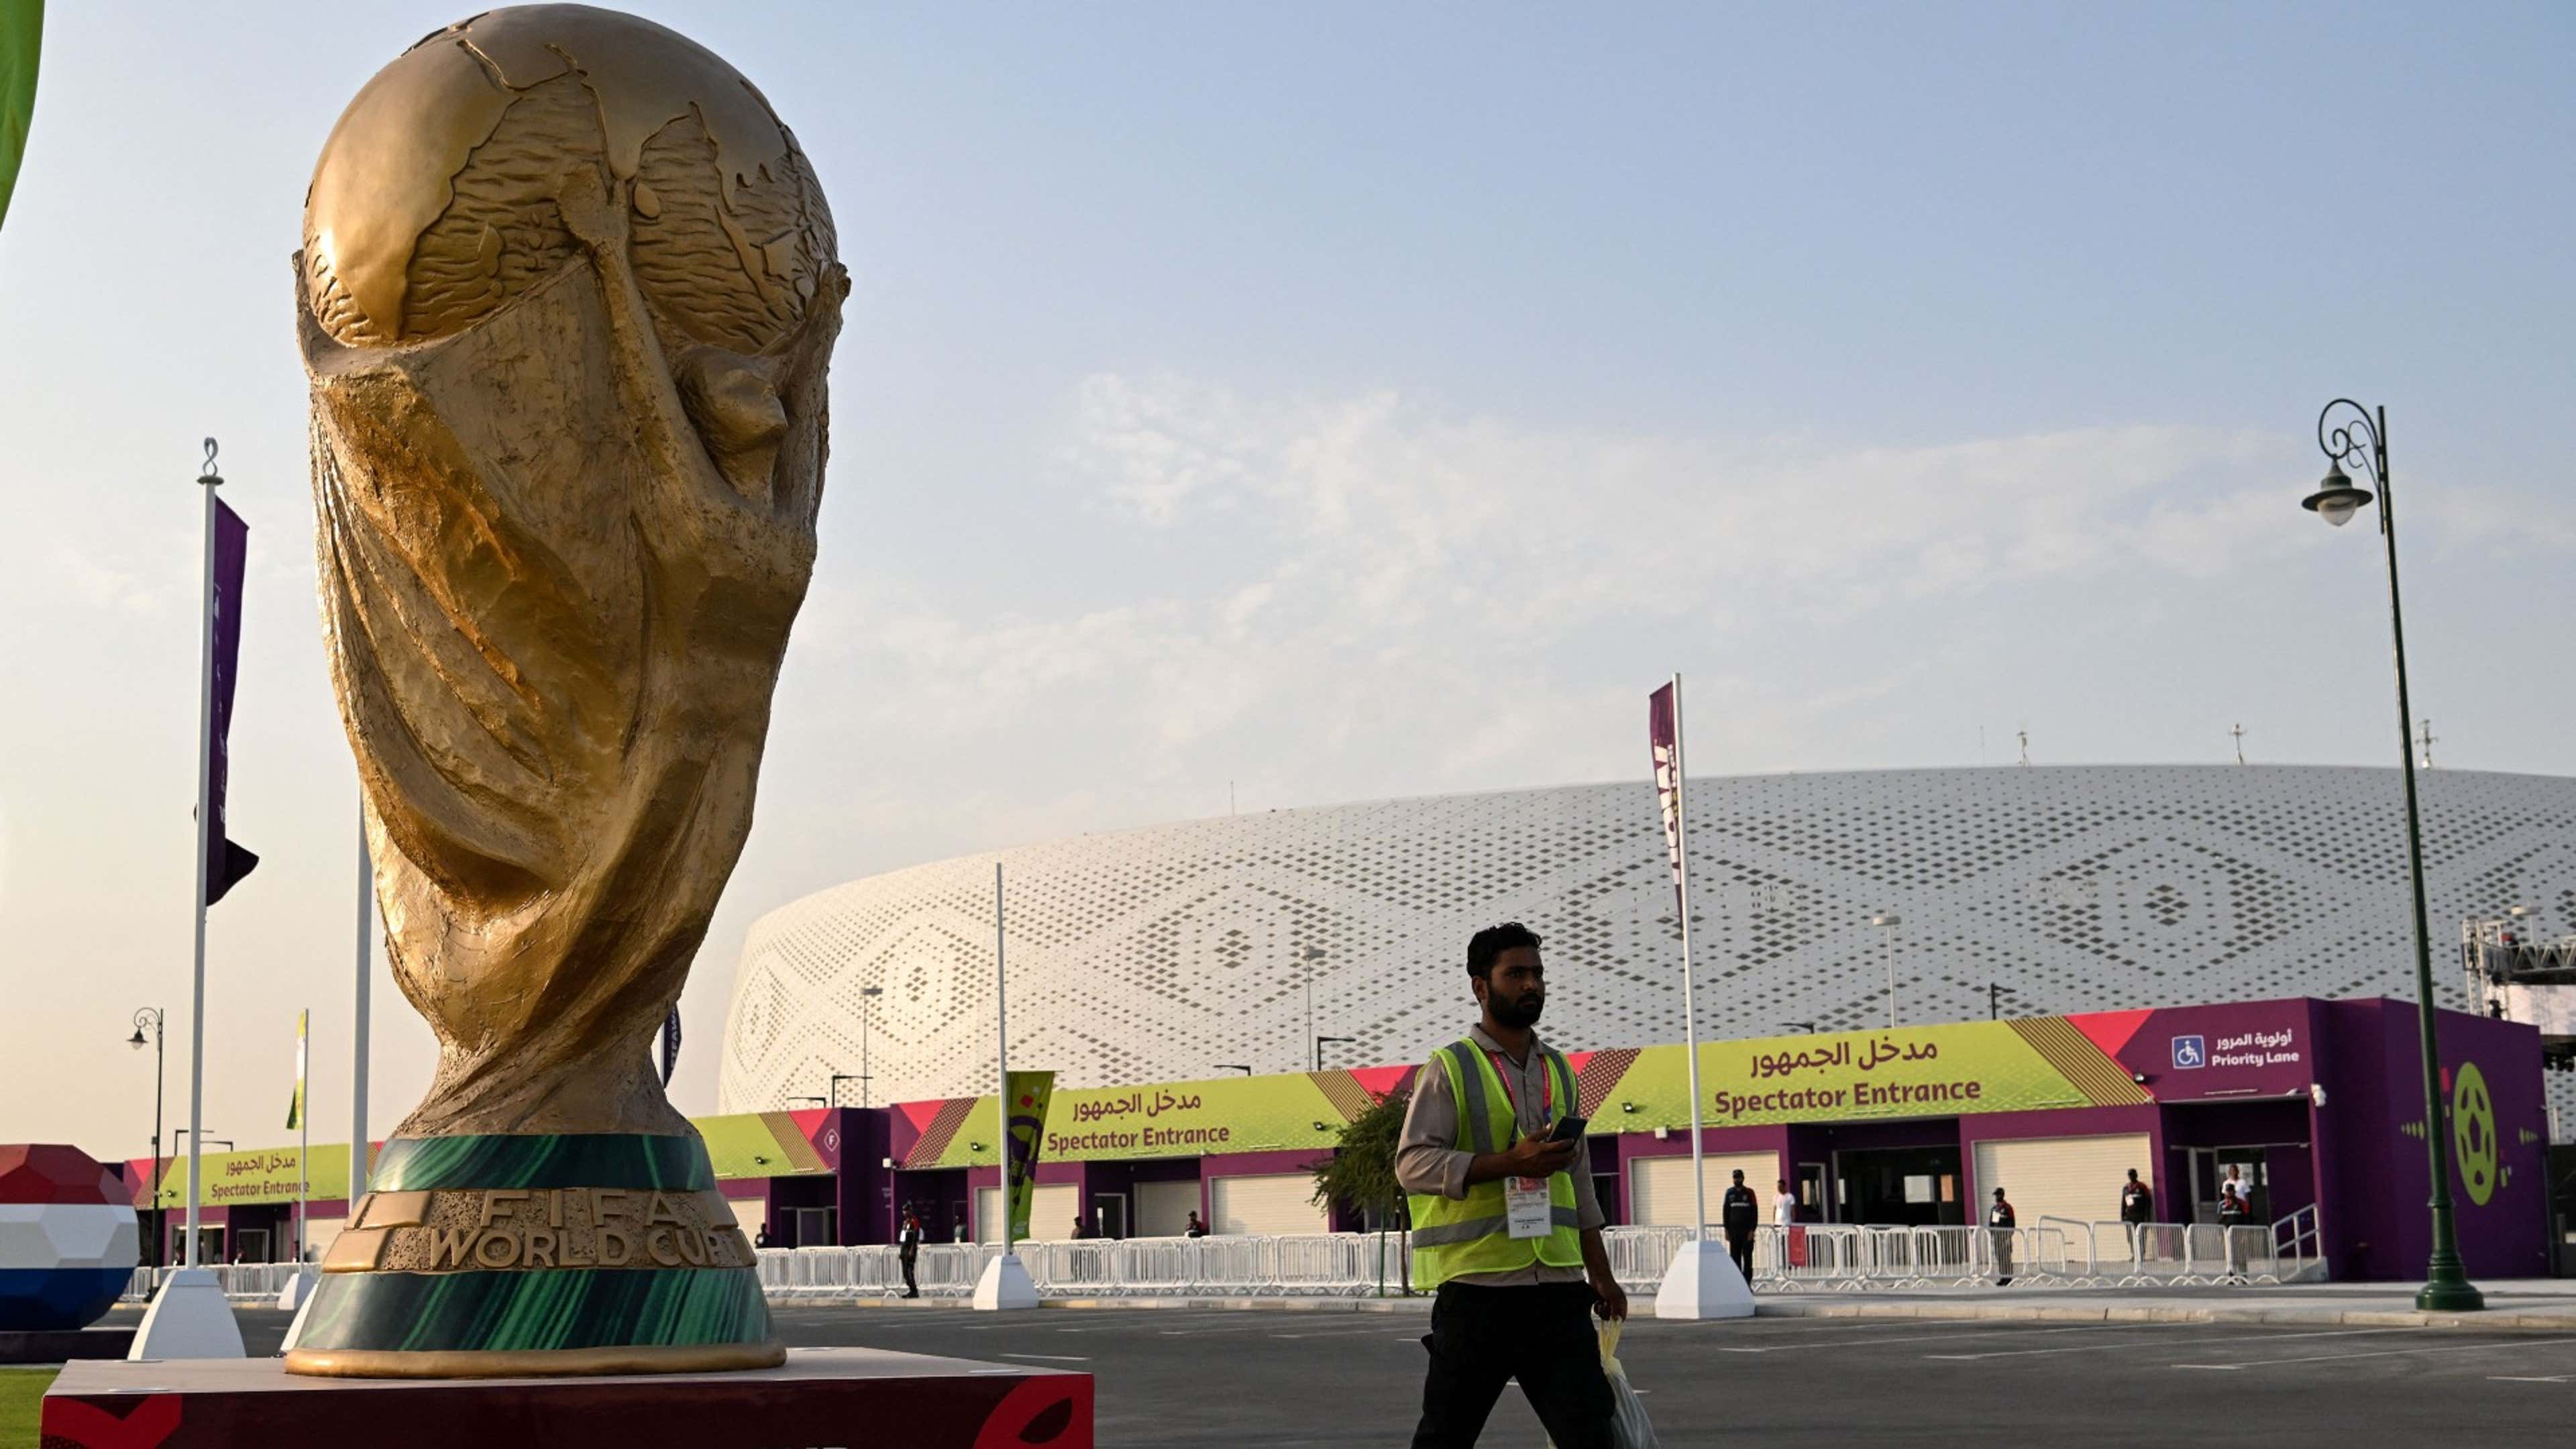 Resultados de hoje da Copa do Mundo 2022: veja placares dos jogos